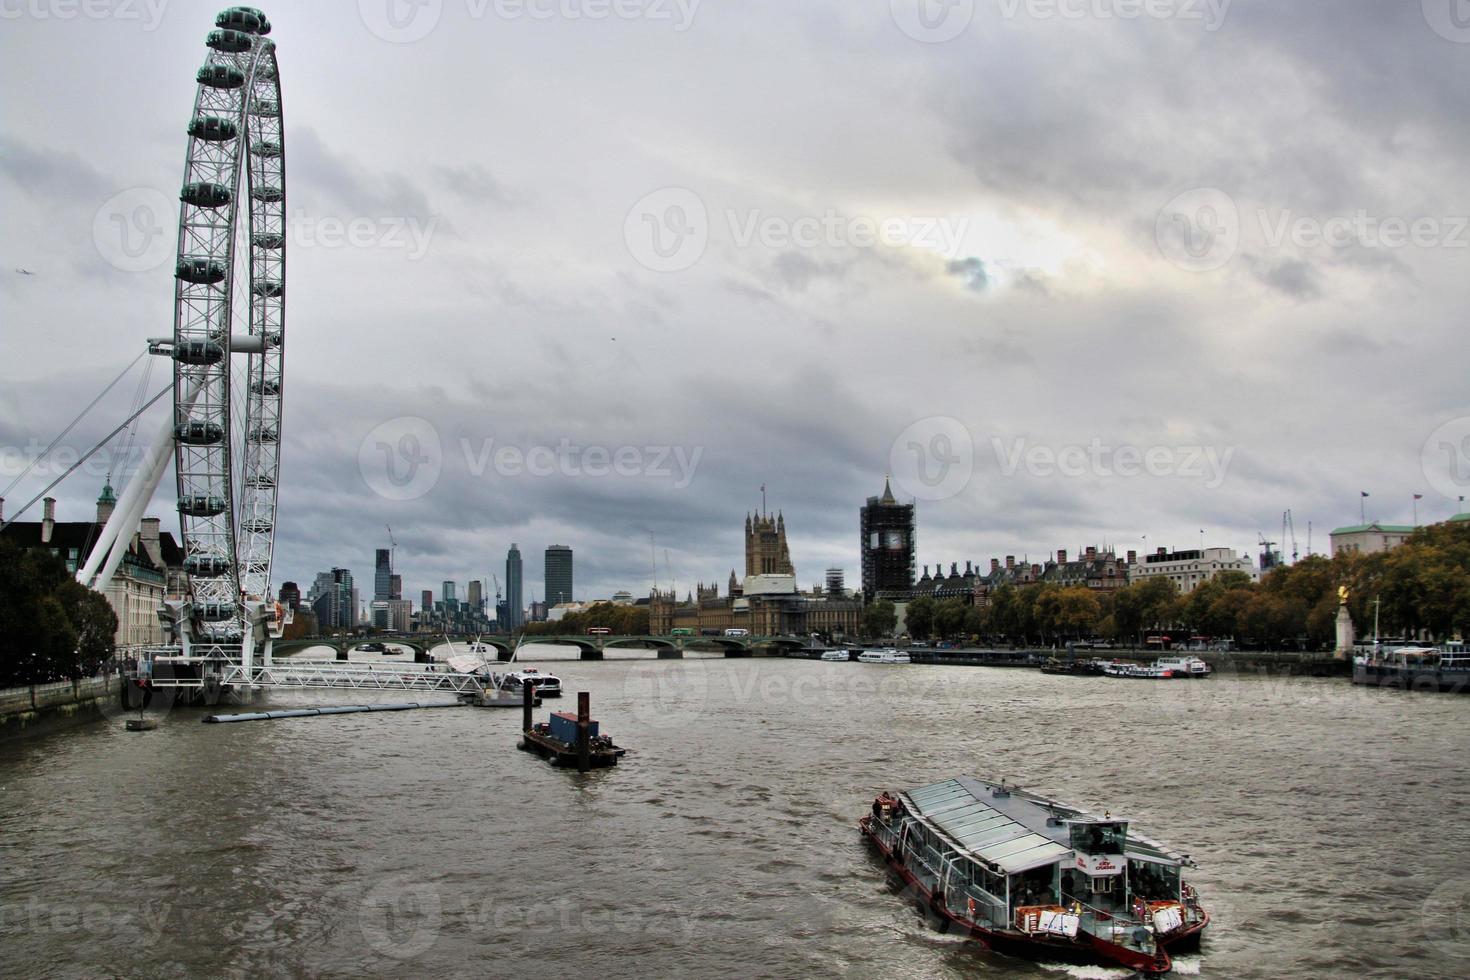 utsikt över Themsen i London foto